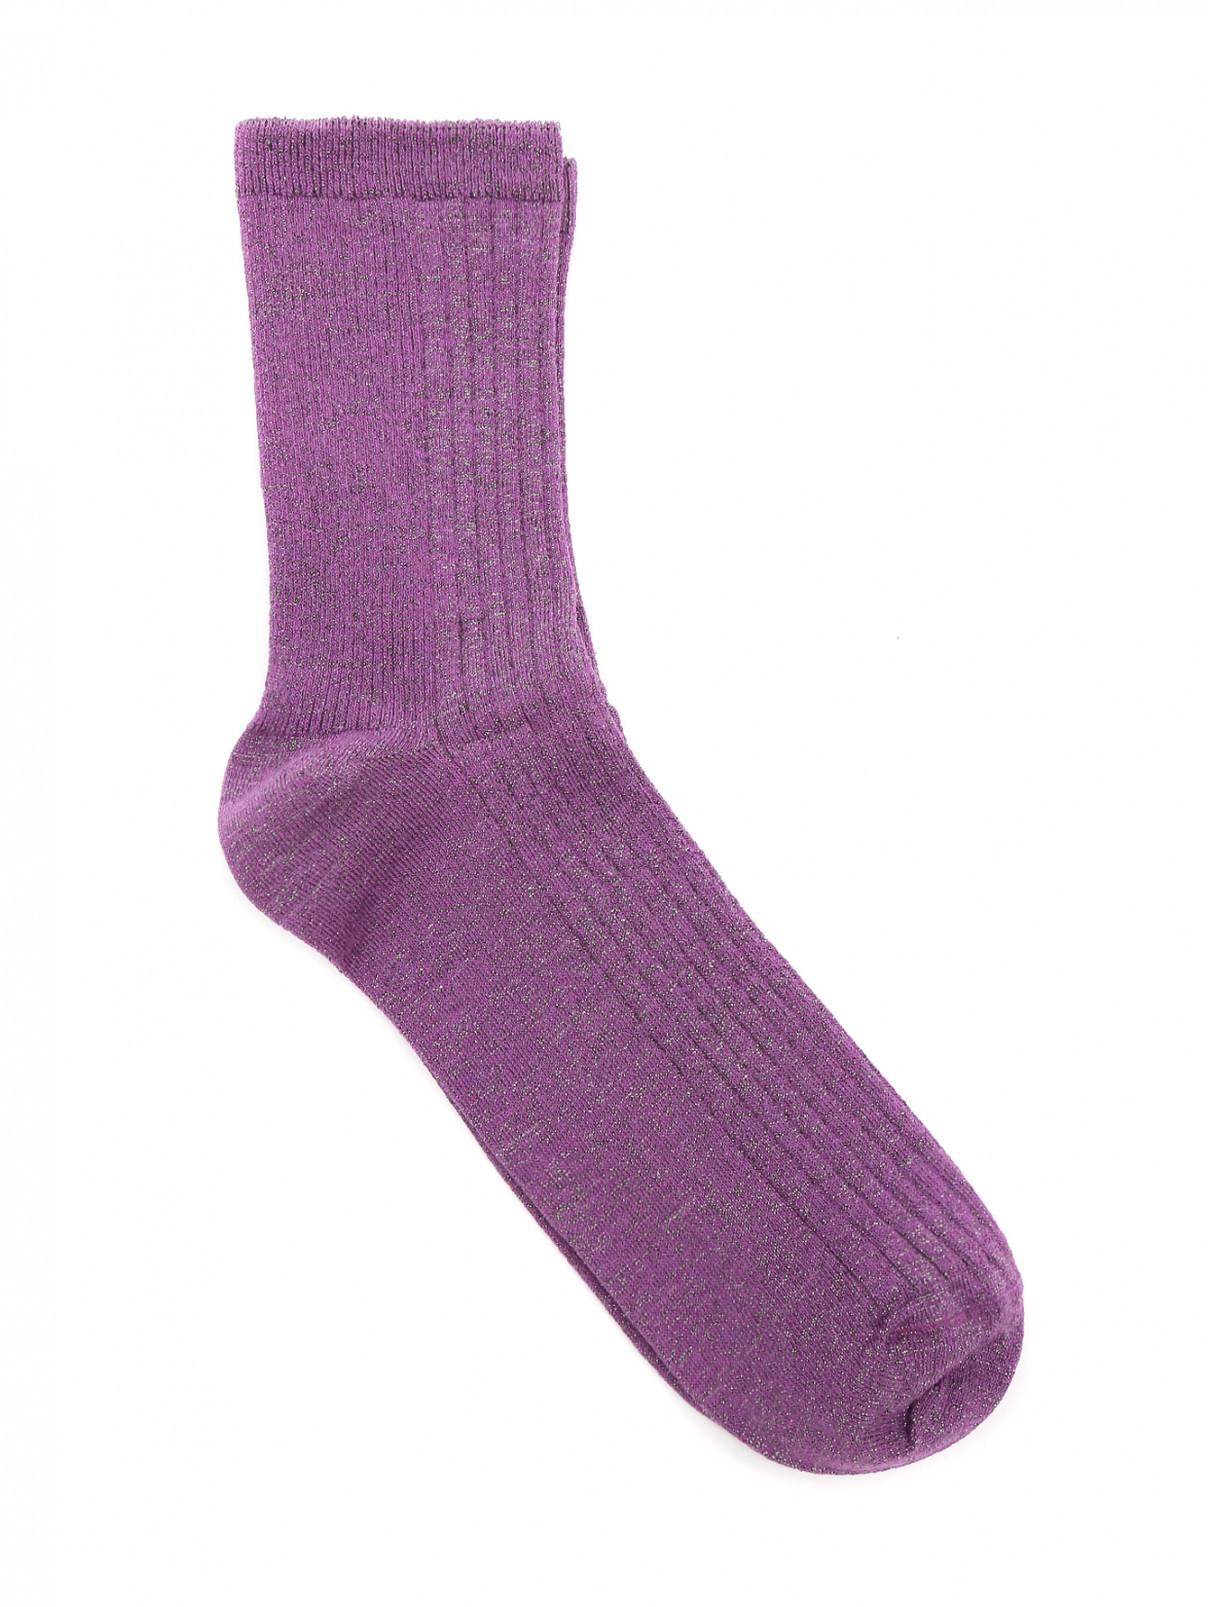 Носки из хлопка ALTO MILANO  –  Общий вид  – Цвет:  Фиолетовый